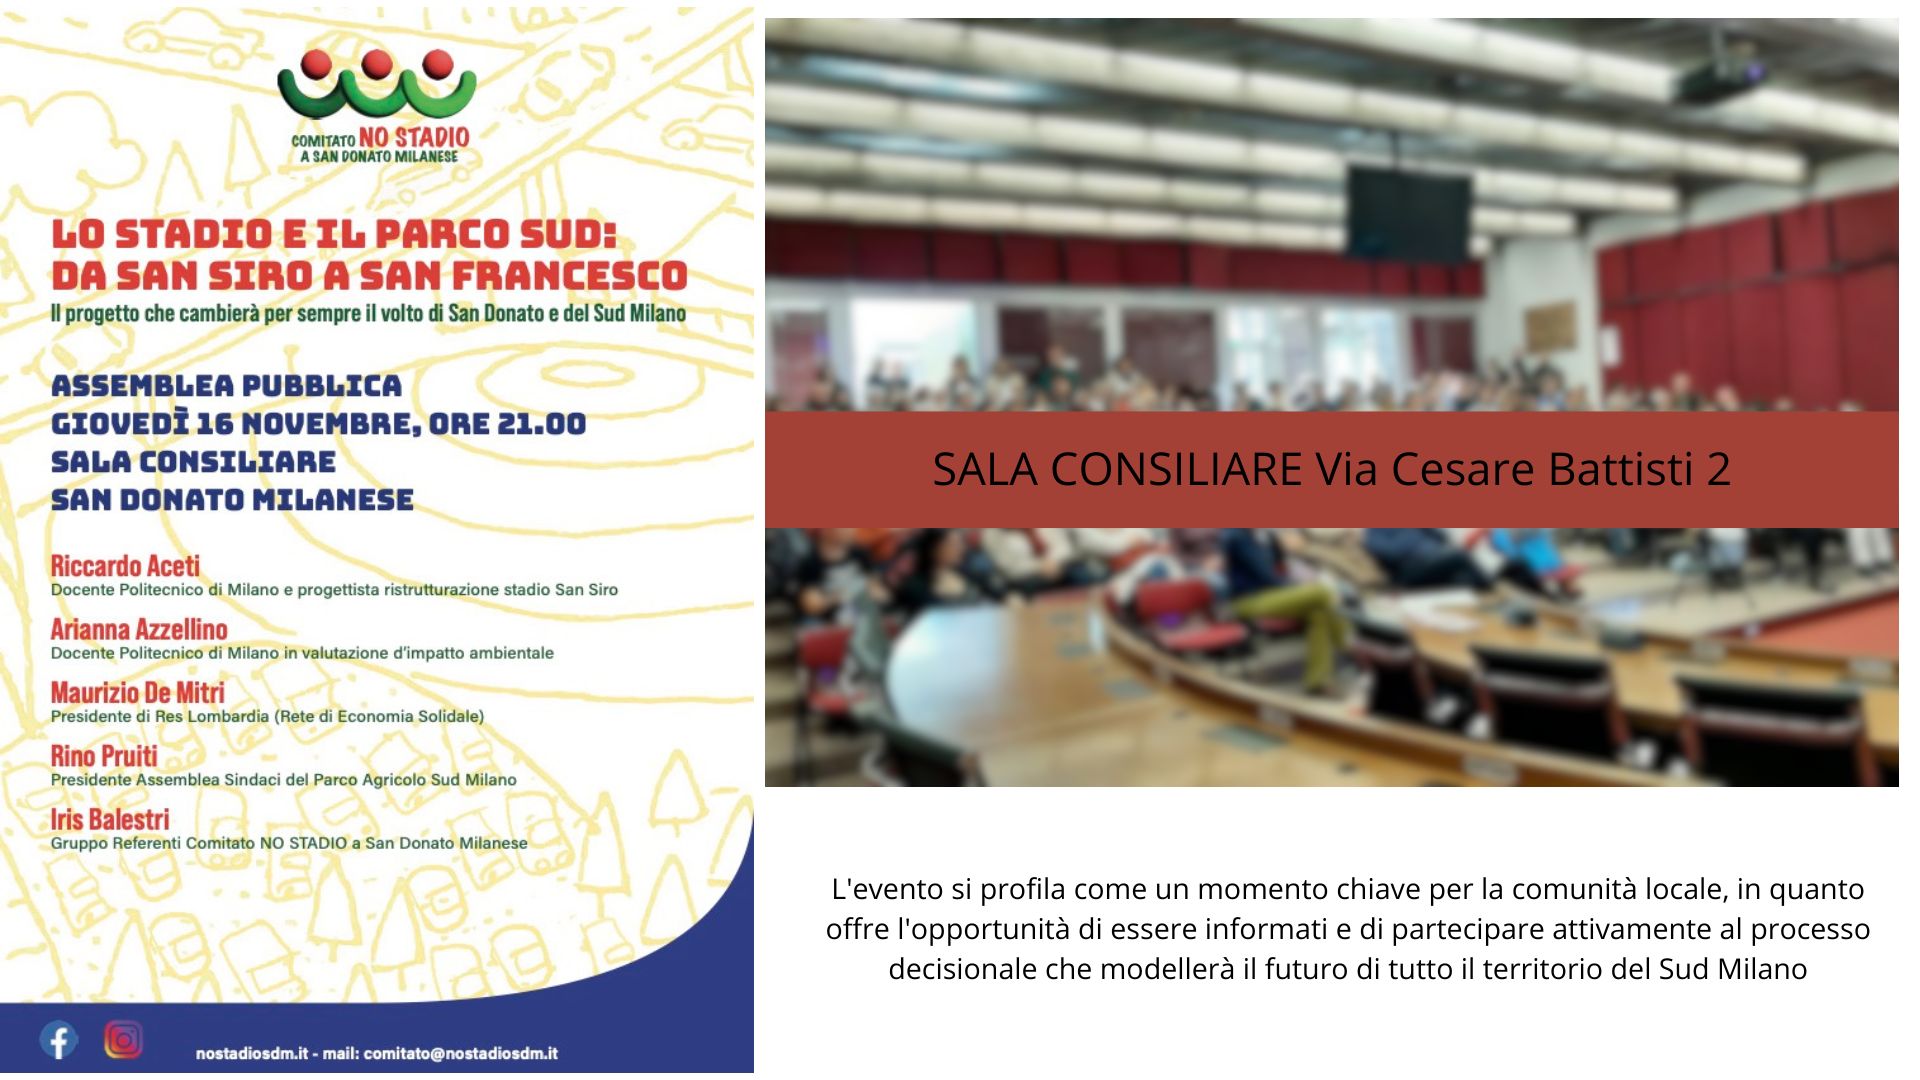 Assemblea Pubblica 18 Novembre 2023 - Comitato NO STADIO a San Donato Milanese